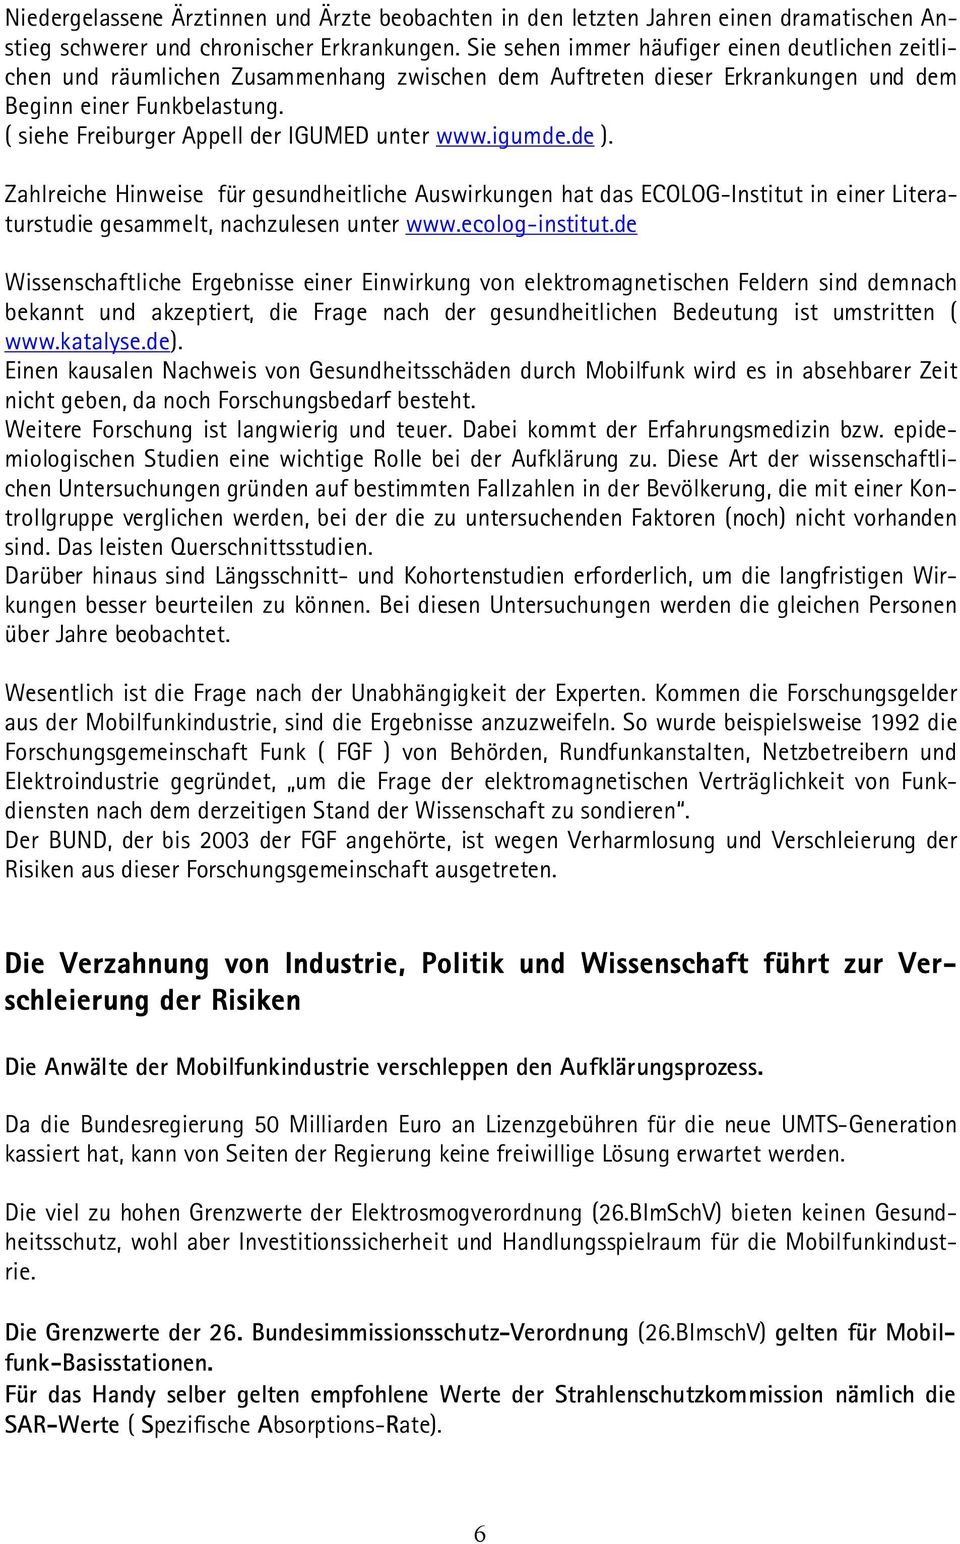 ( siehe Freiburger Appell der IGUMED unter www.igumde.de ). Zahlreiche Hinweise für gesundheitliche Auswirkungen hat das ECOLOG-Institut in einer Literaturstudie gesammelt, nachzulesen unter www.